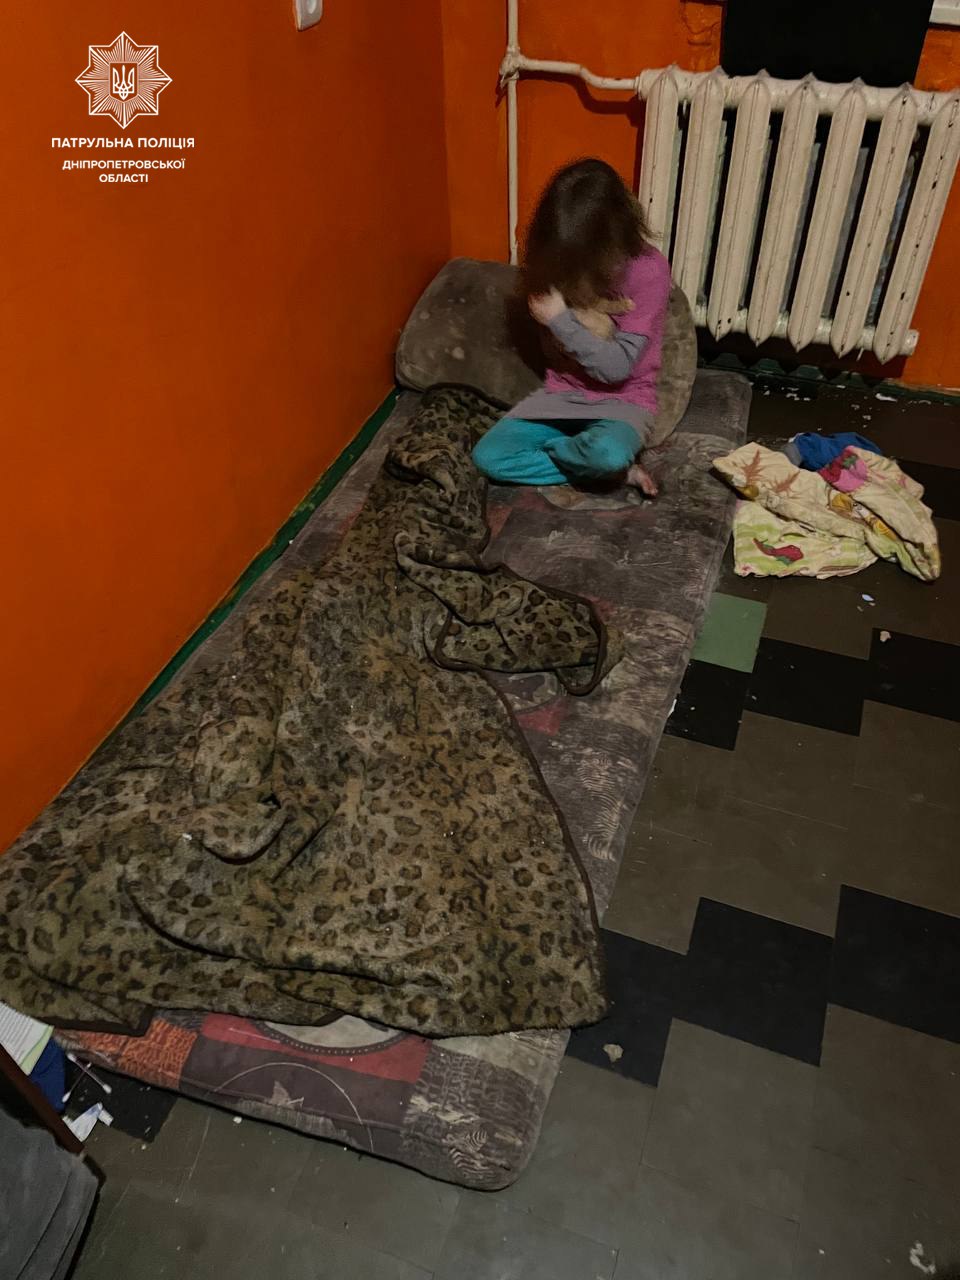 Шістьох дітей виявили патрульні в одній із квартир на Дніпропетровщині 